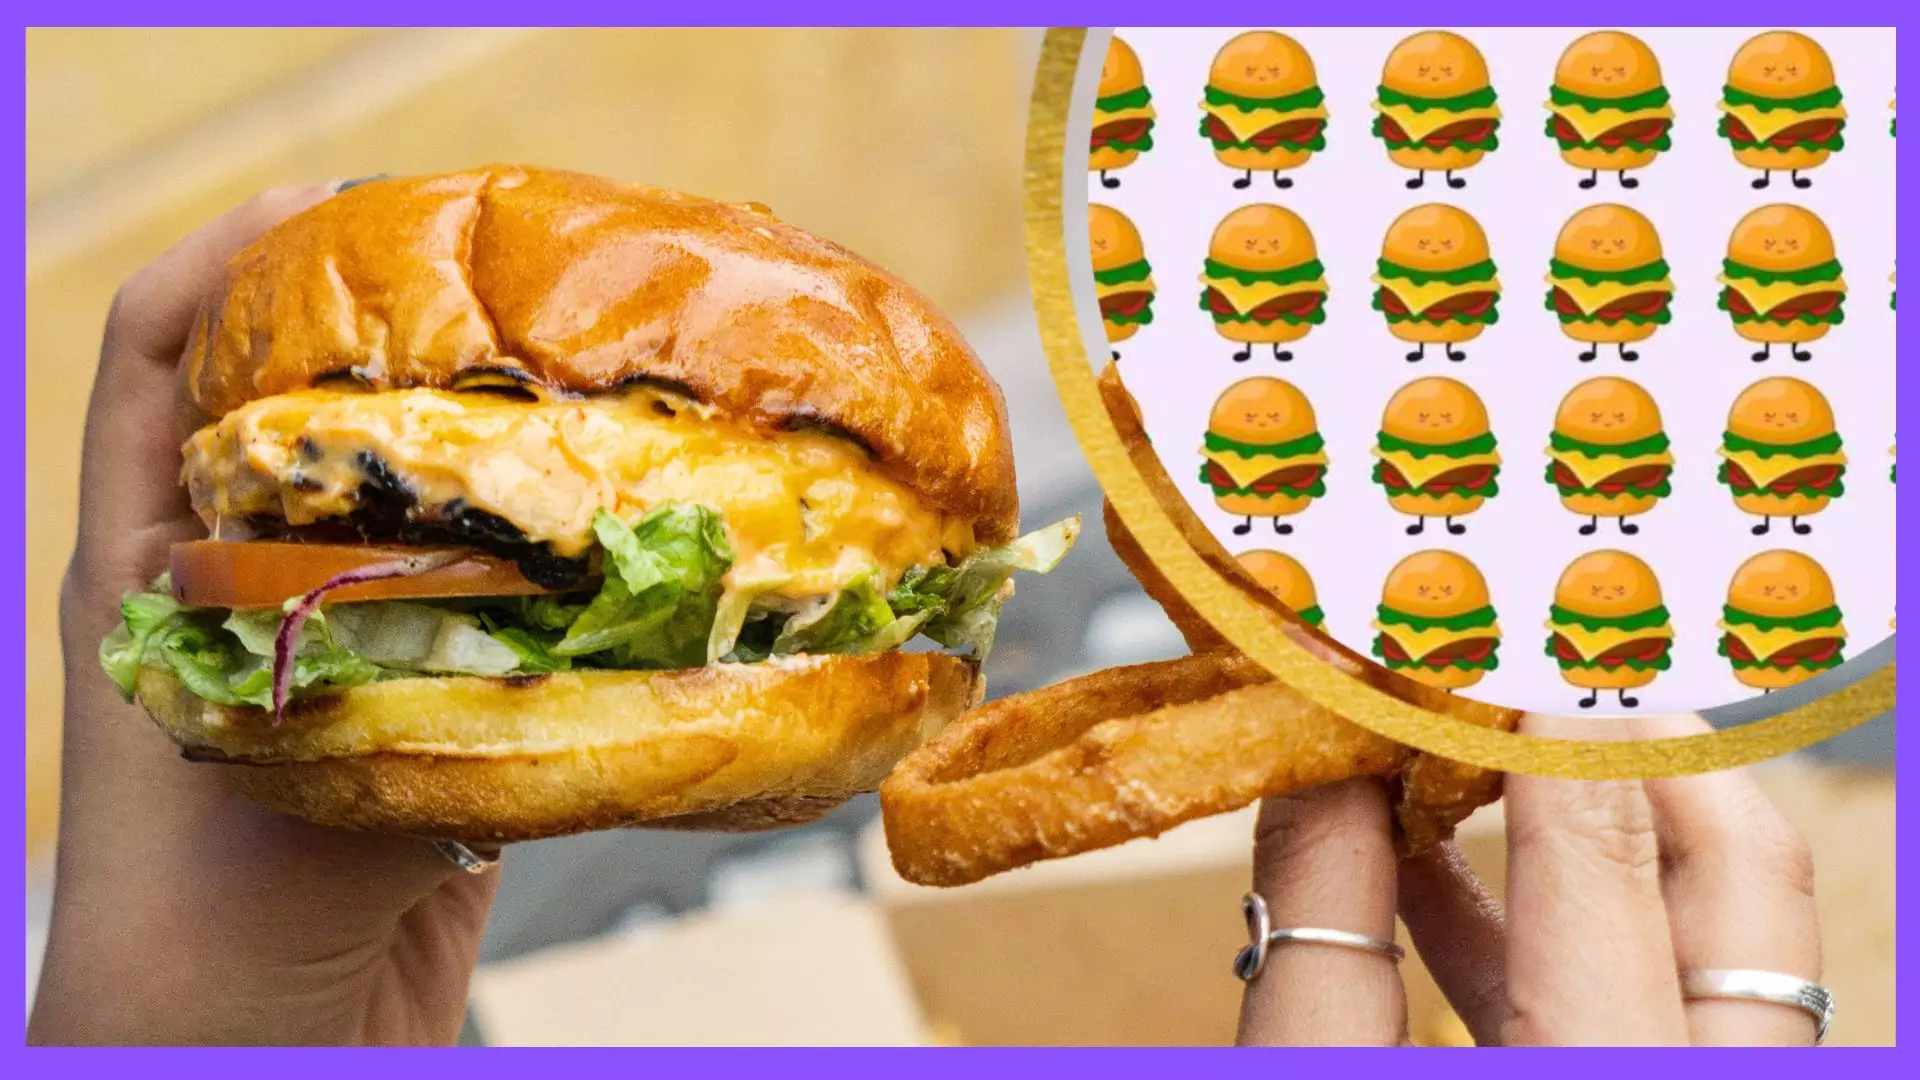 Który cheeseburger nie pasuje do reszty? Na odpowiedź masz dziewięć sekund